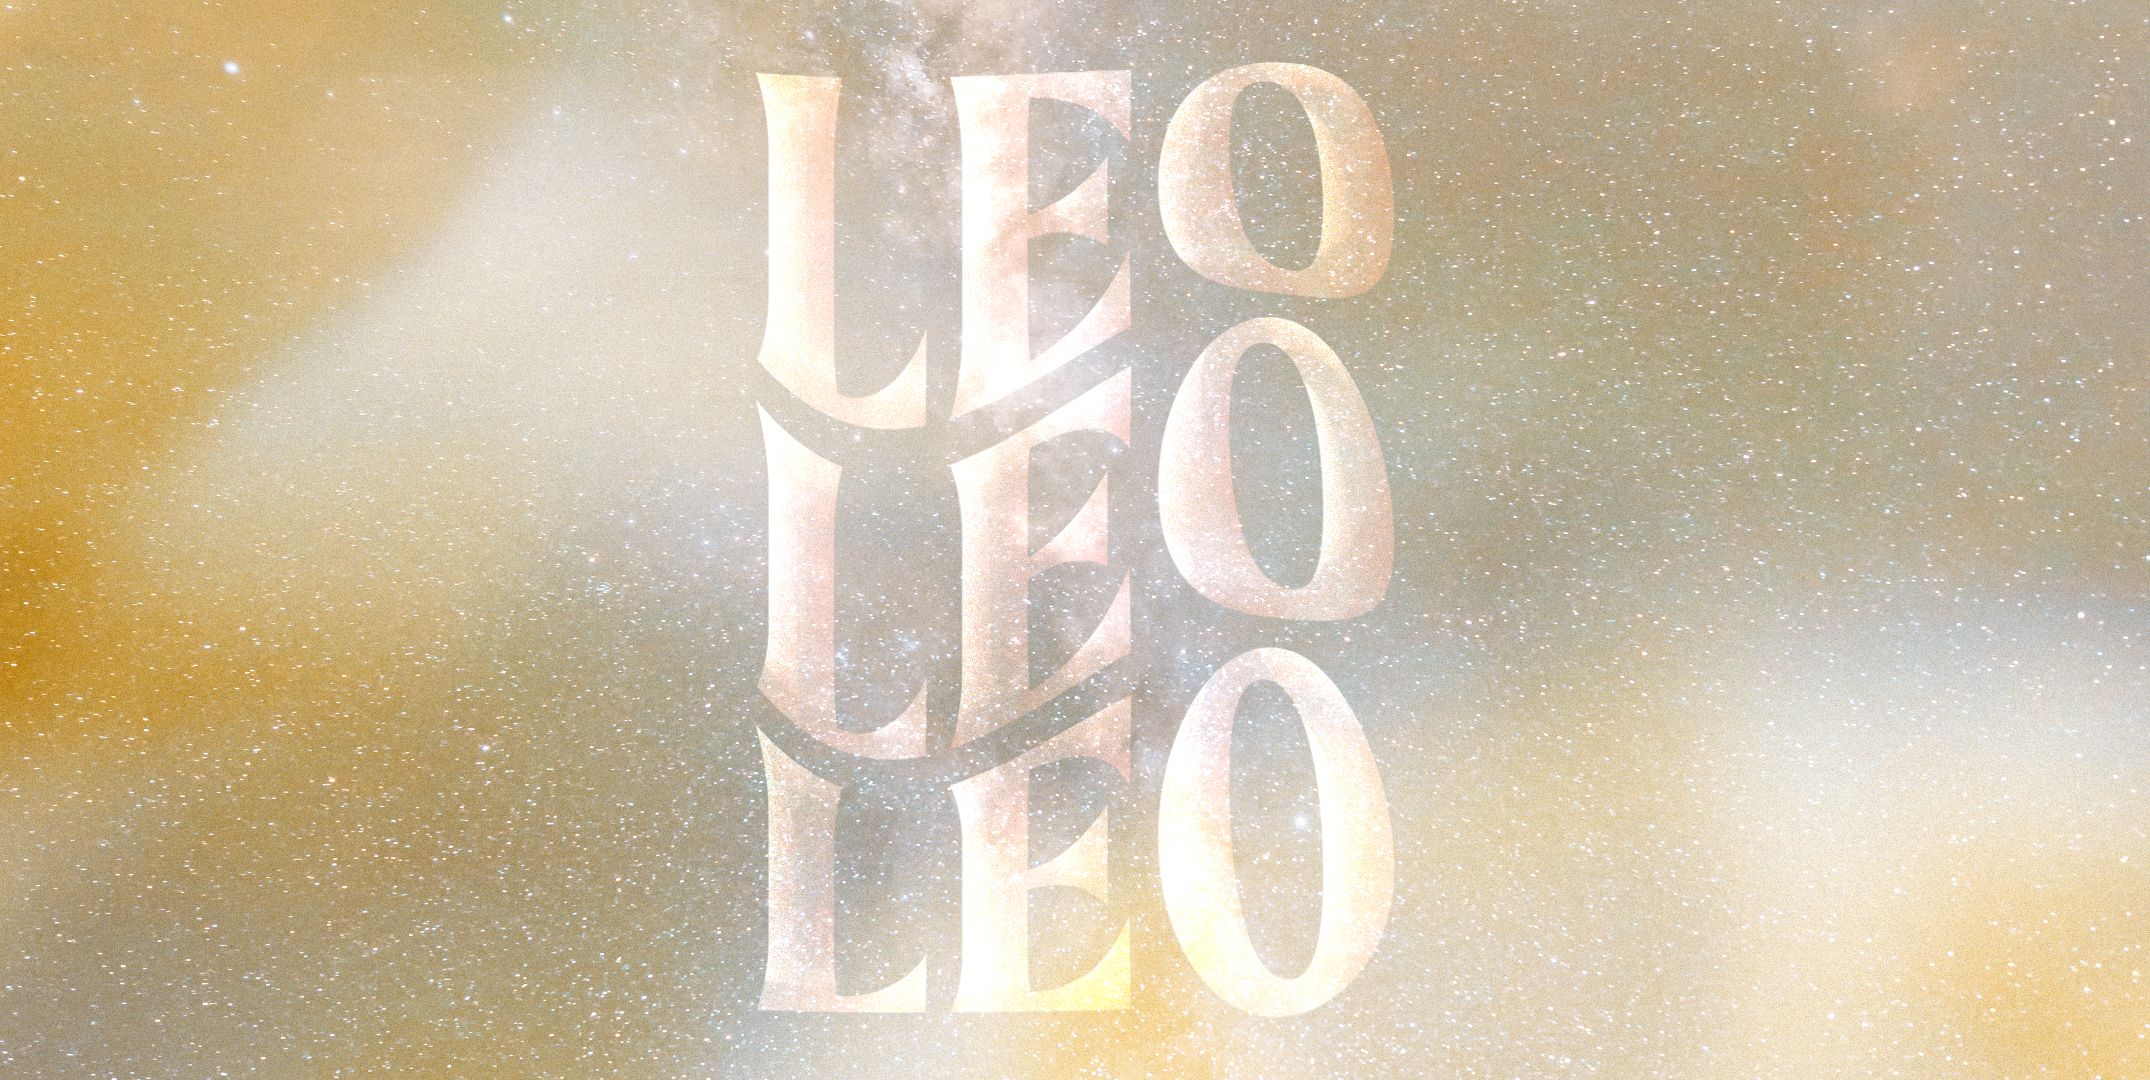 Leo traits and personality characteristics